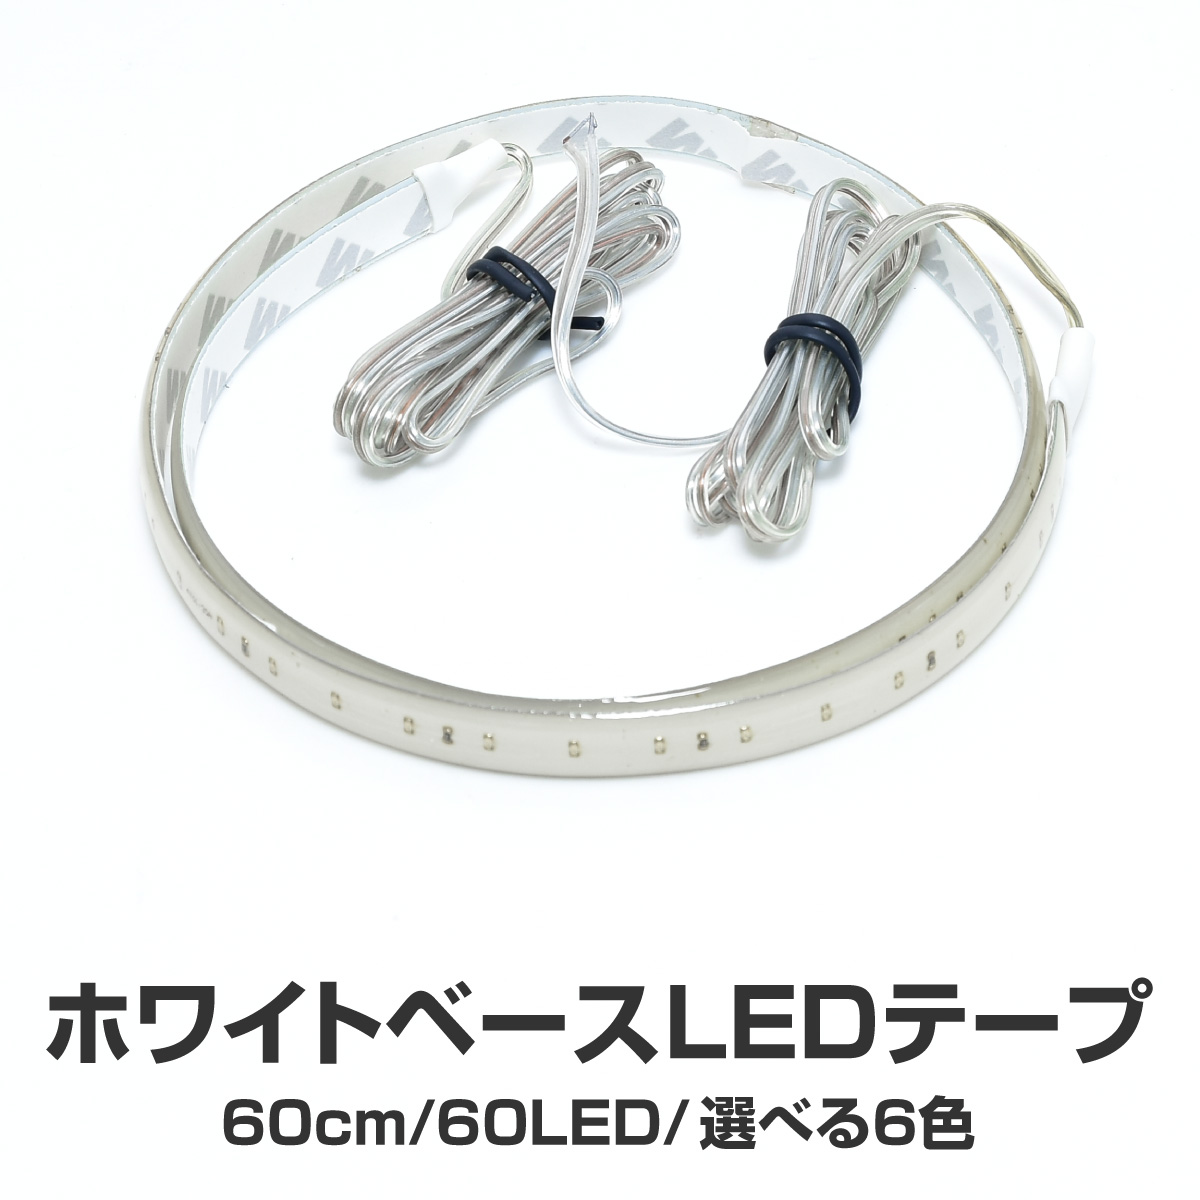 【楽天市場】LEDテープ 60cm 60LED 短間発光 白ベース 選択6色 白 赤 青 緑 ピンク アンバー 防水 カスタム テープライト